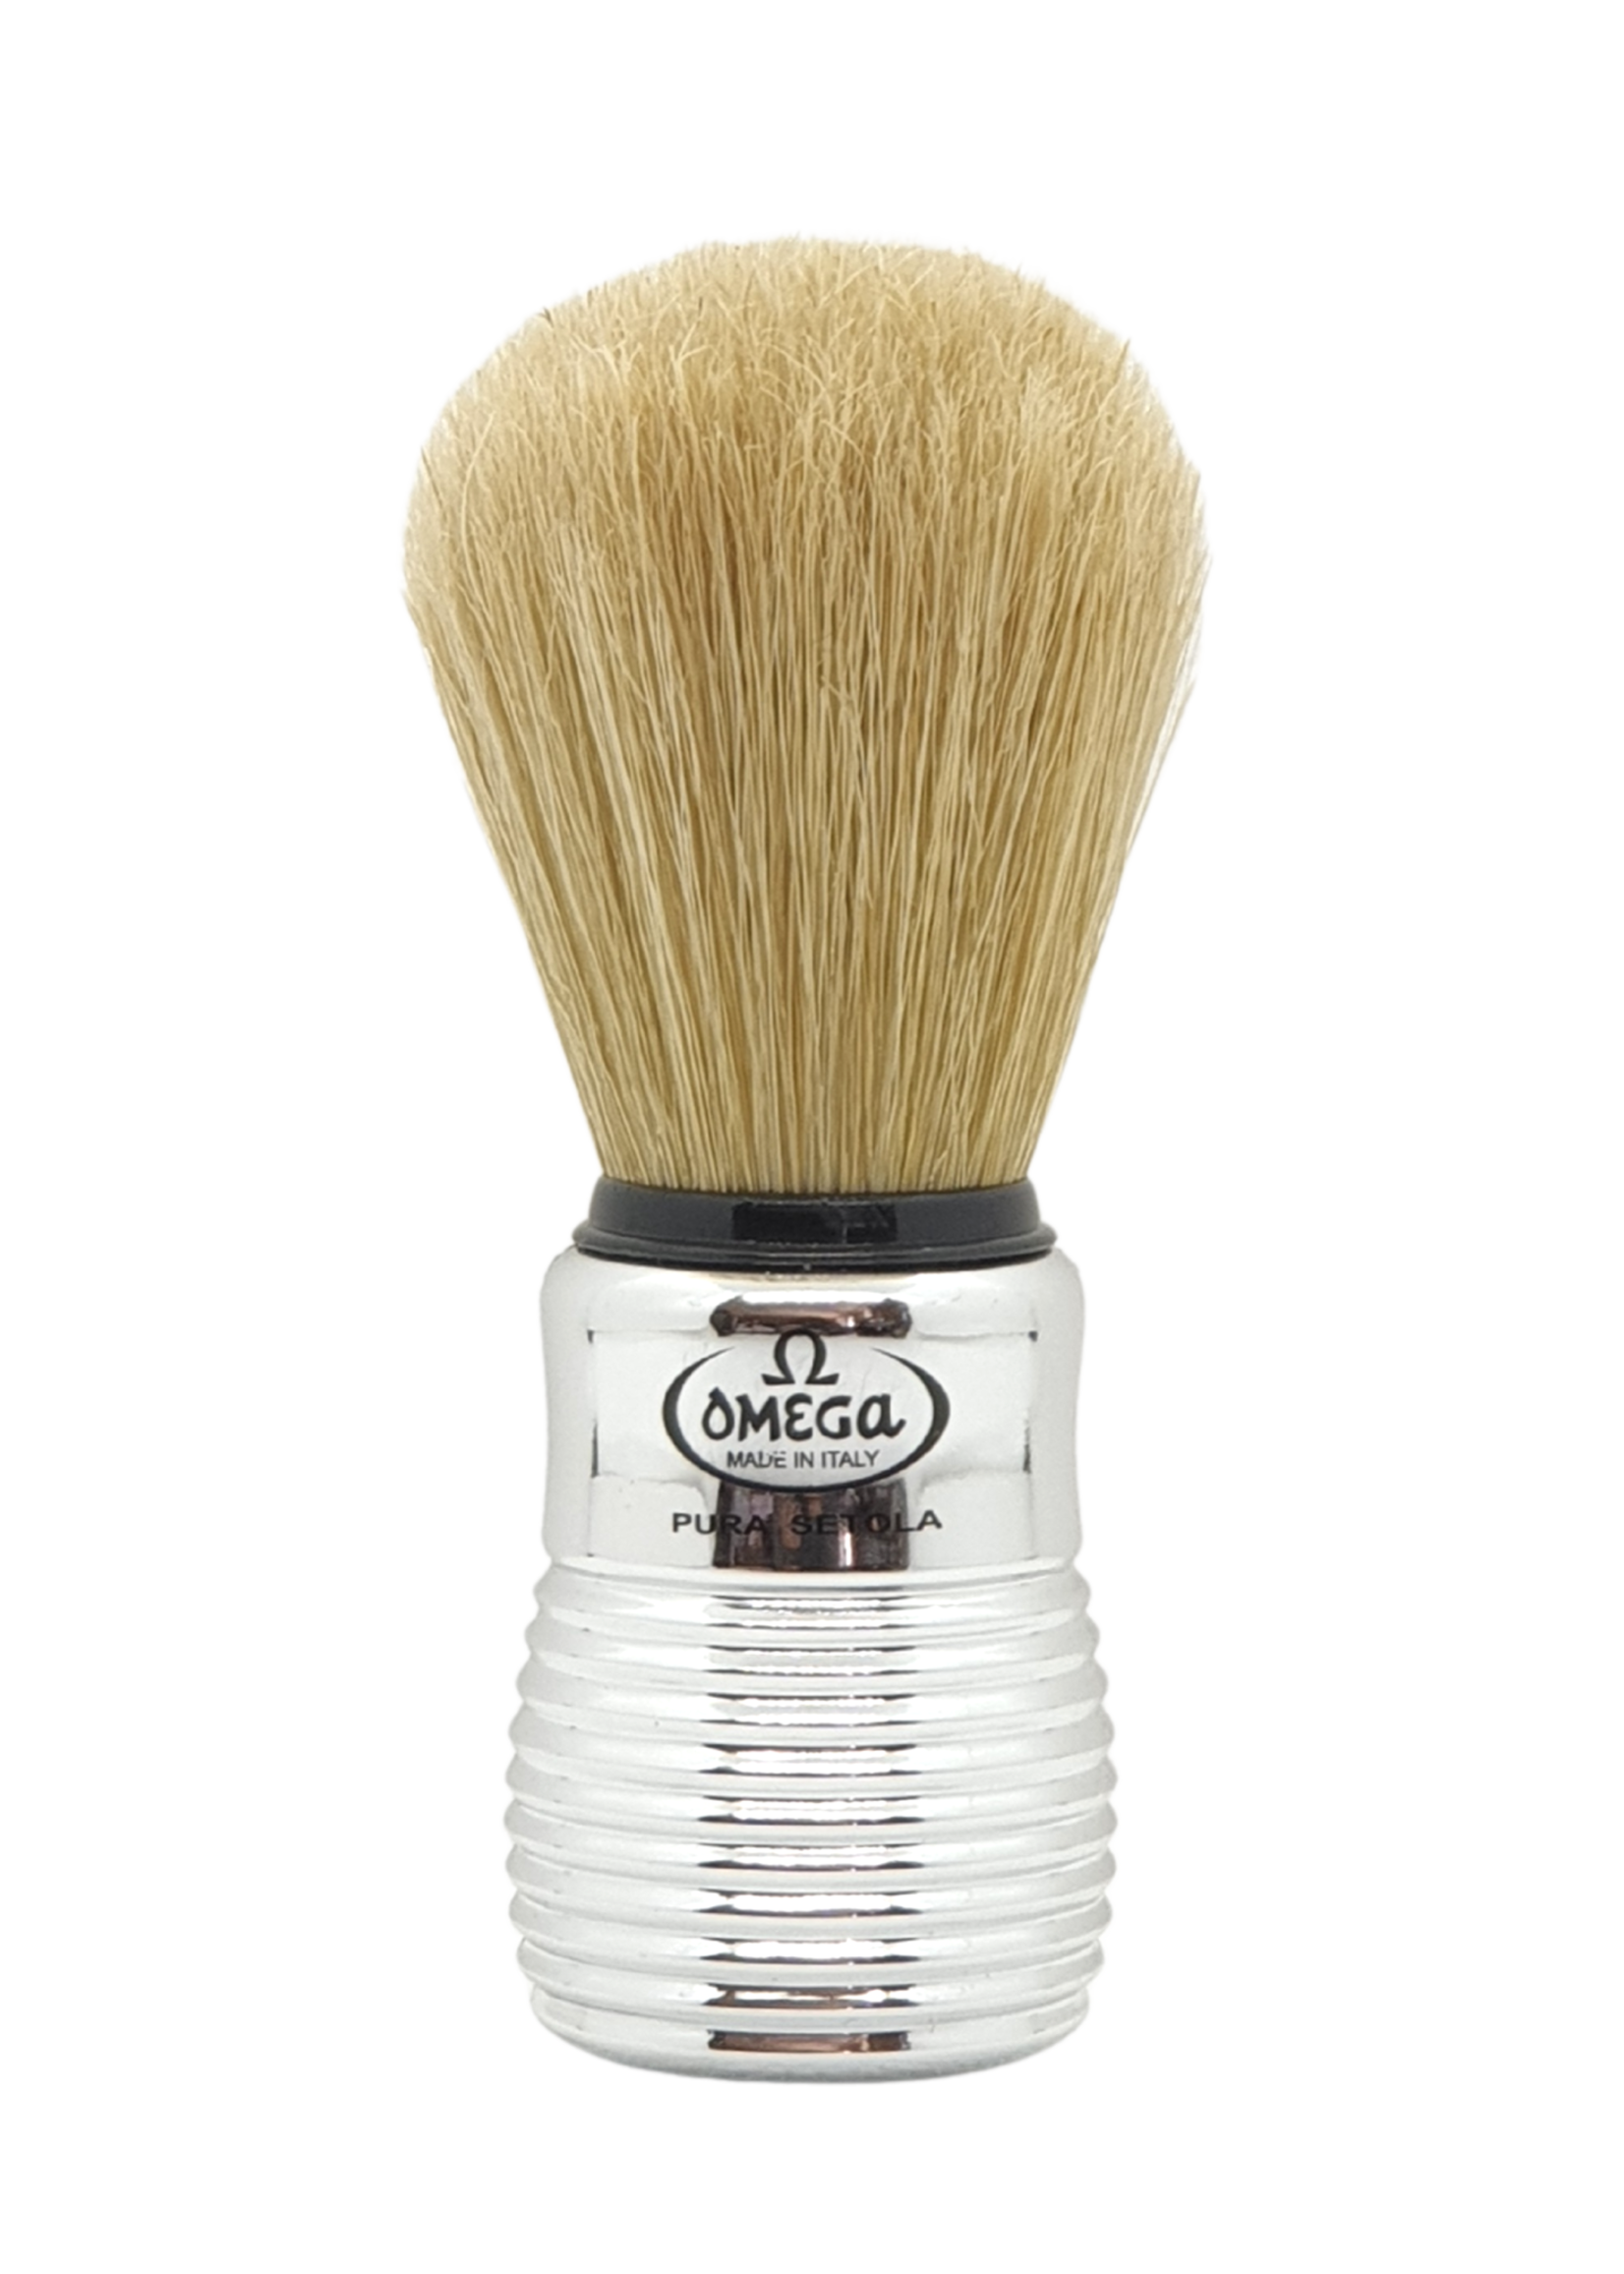 Omega Chrome Shaving Brush (Art 80080)